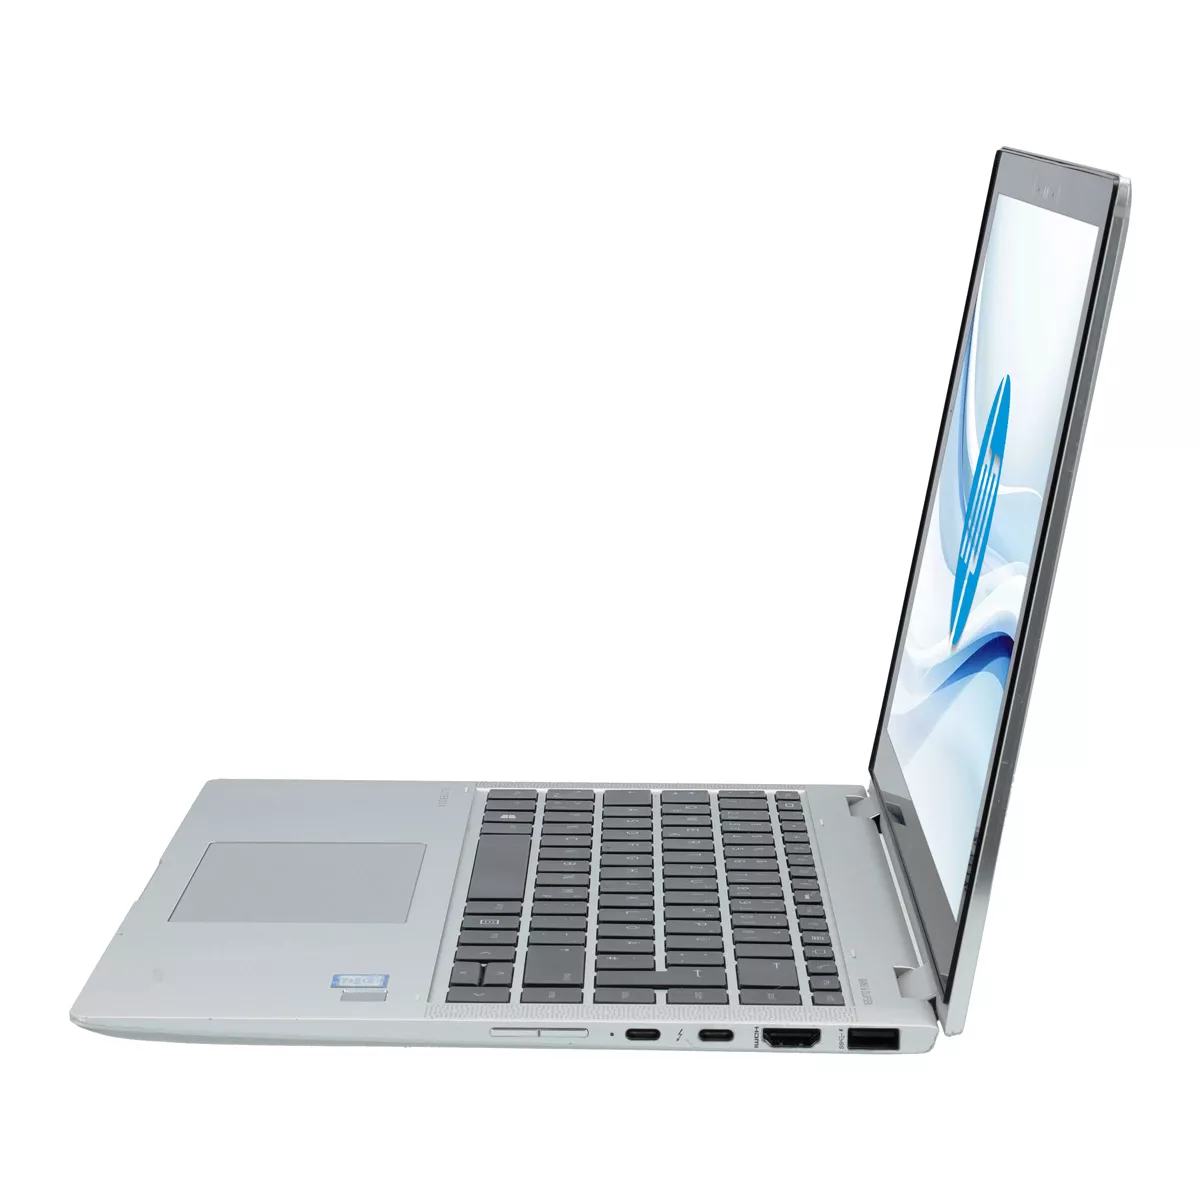 HP EliteBook x360 1040 G6 Core i7 8565U 16 GB 240 GB M.2 nVME SSD Touch Webcam A